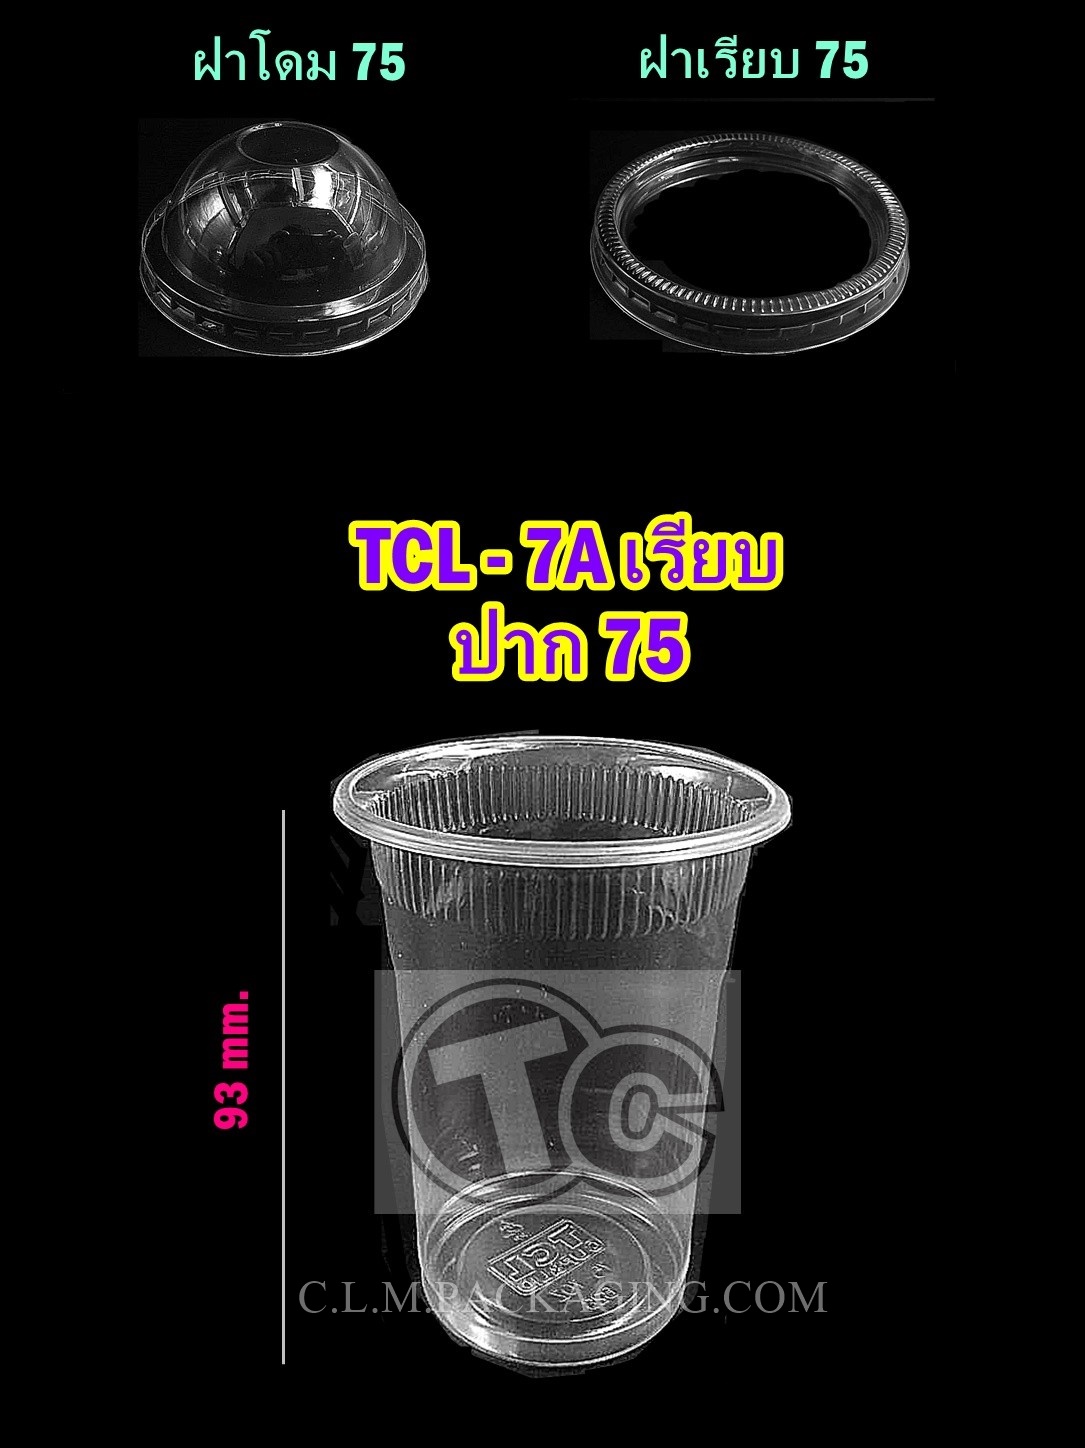 แก้ว TCL เนื้อ PP 7 oz.A ลอนเกลียวเรียบใส  ปาก 75 mm.